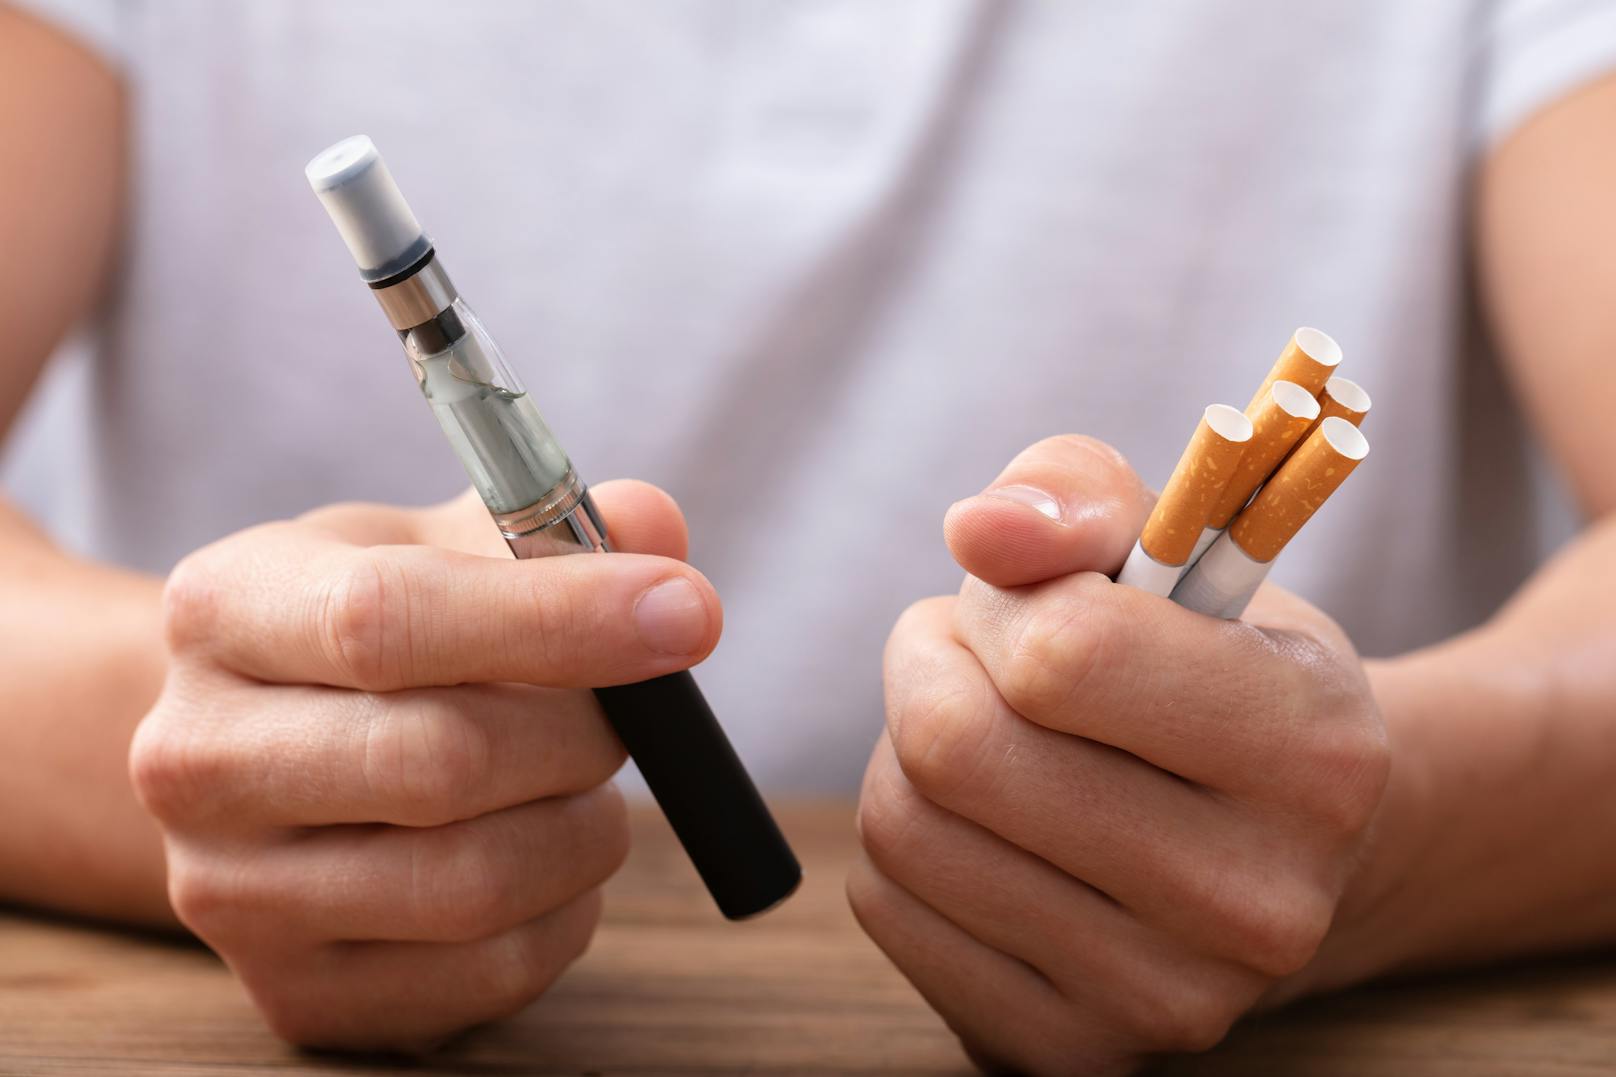 So scheinen die E-Zigaretten deutlich schneller Einfluss auf die Bakterienzusammensetzung und die Entzündungswerte zu nehmen als Tabakzigaretten, wie es in der Studie heißt.